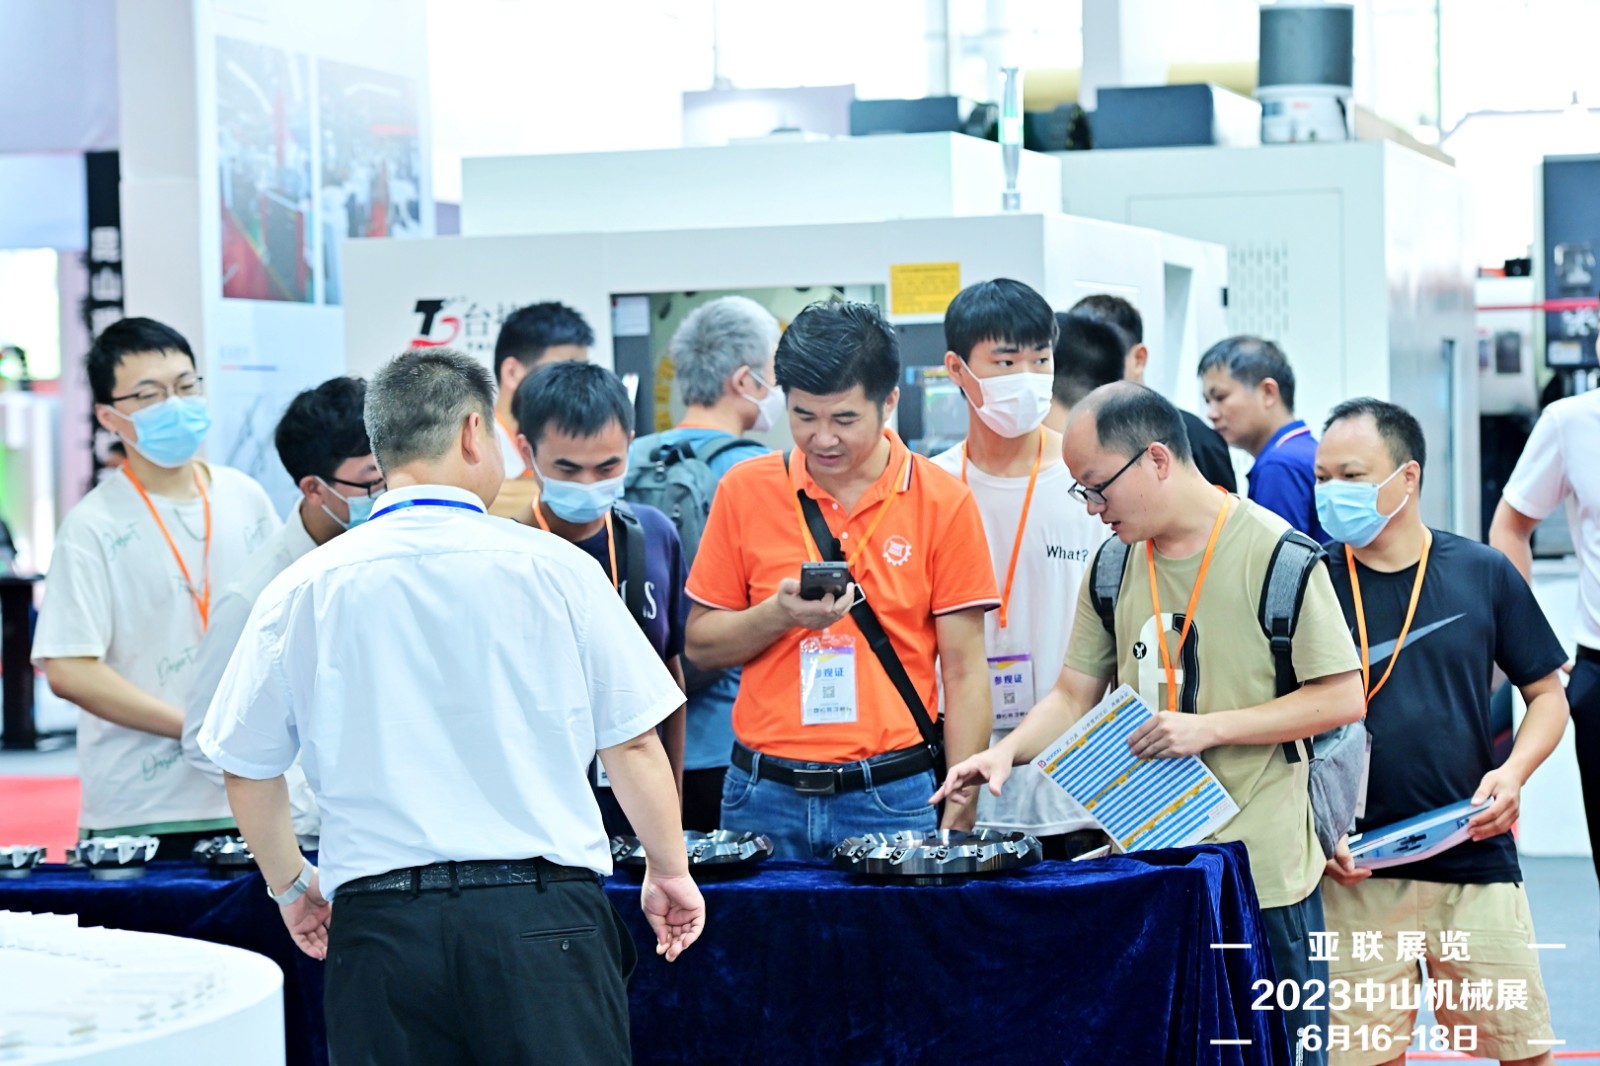 学校受邀参加 2023年中山机械工业展会